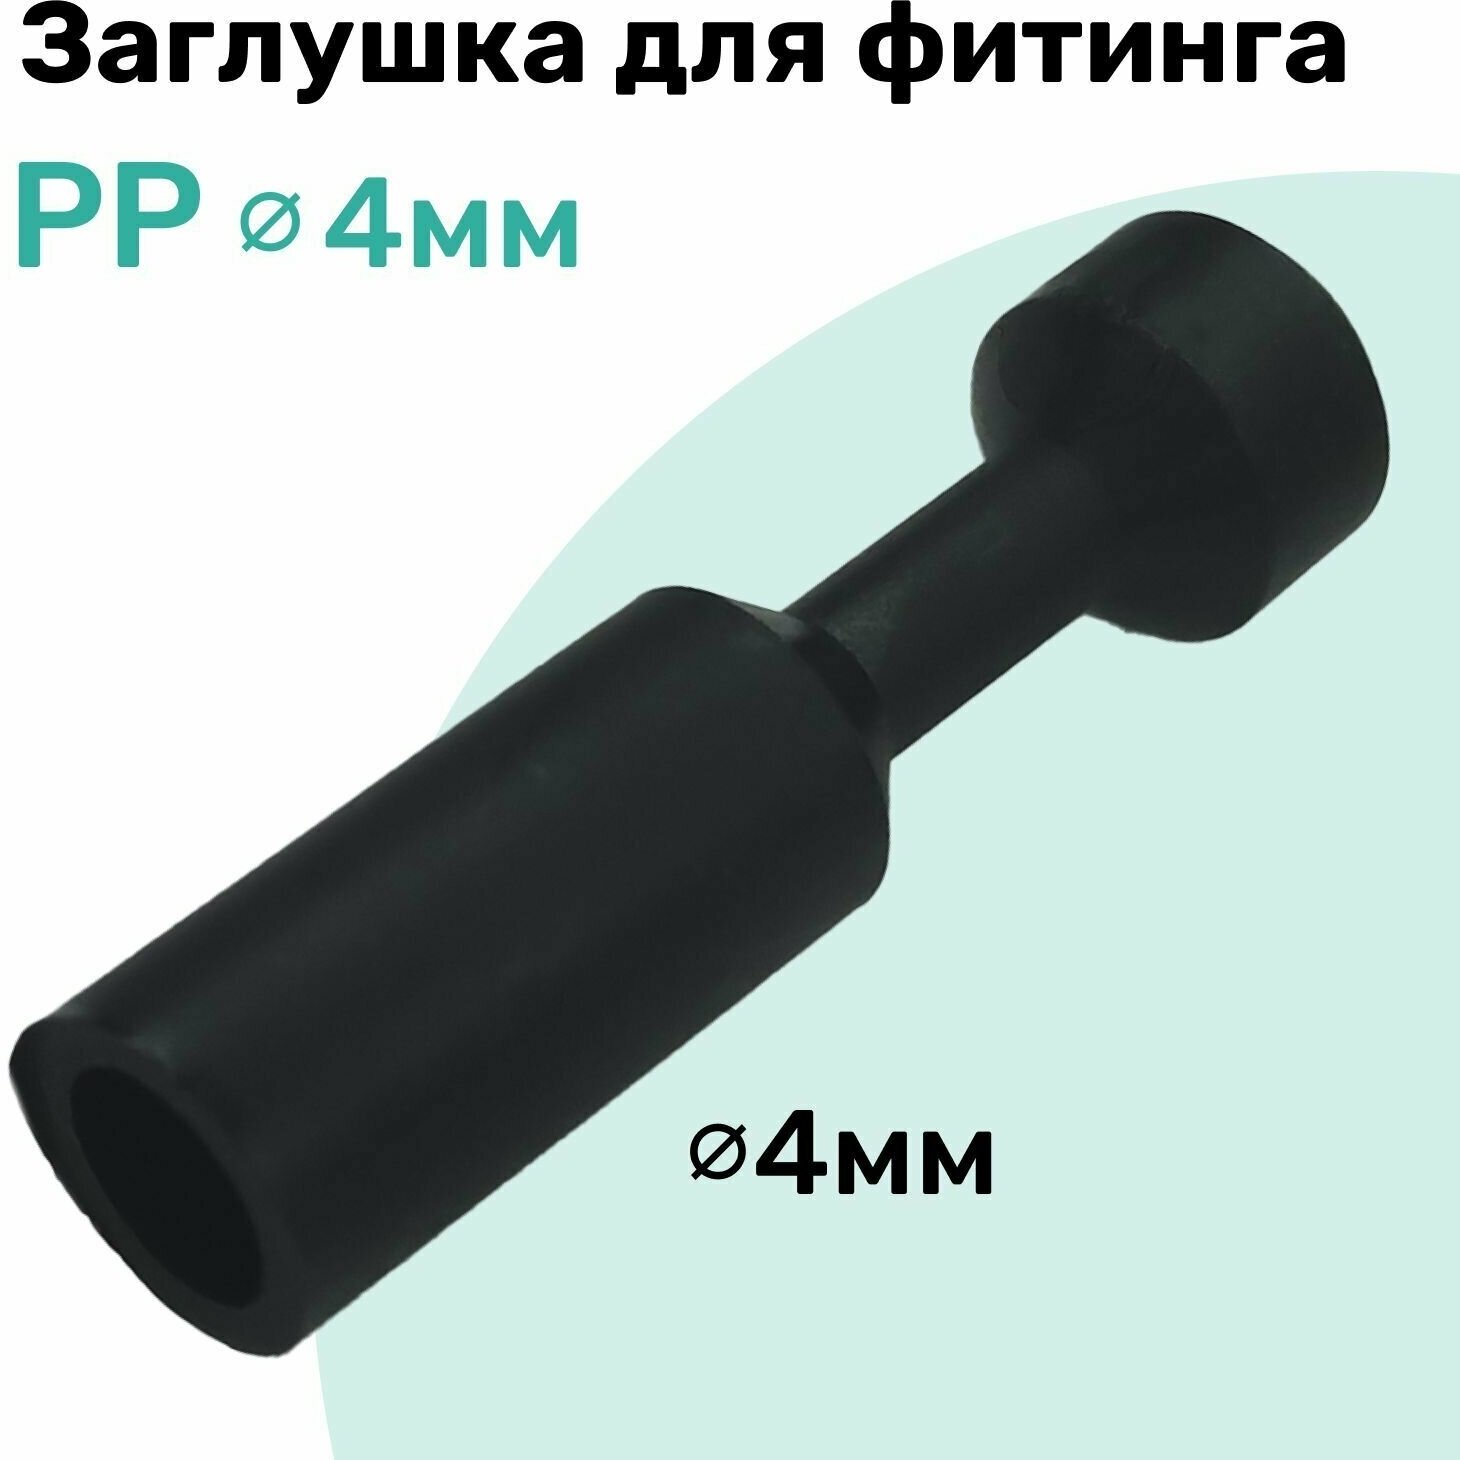 Заглушка для фитинга пневматического PP 4 мм NBPT